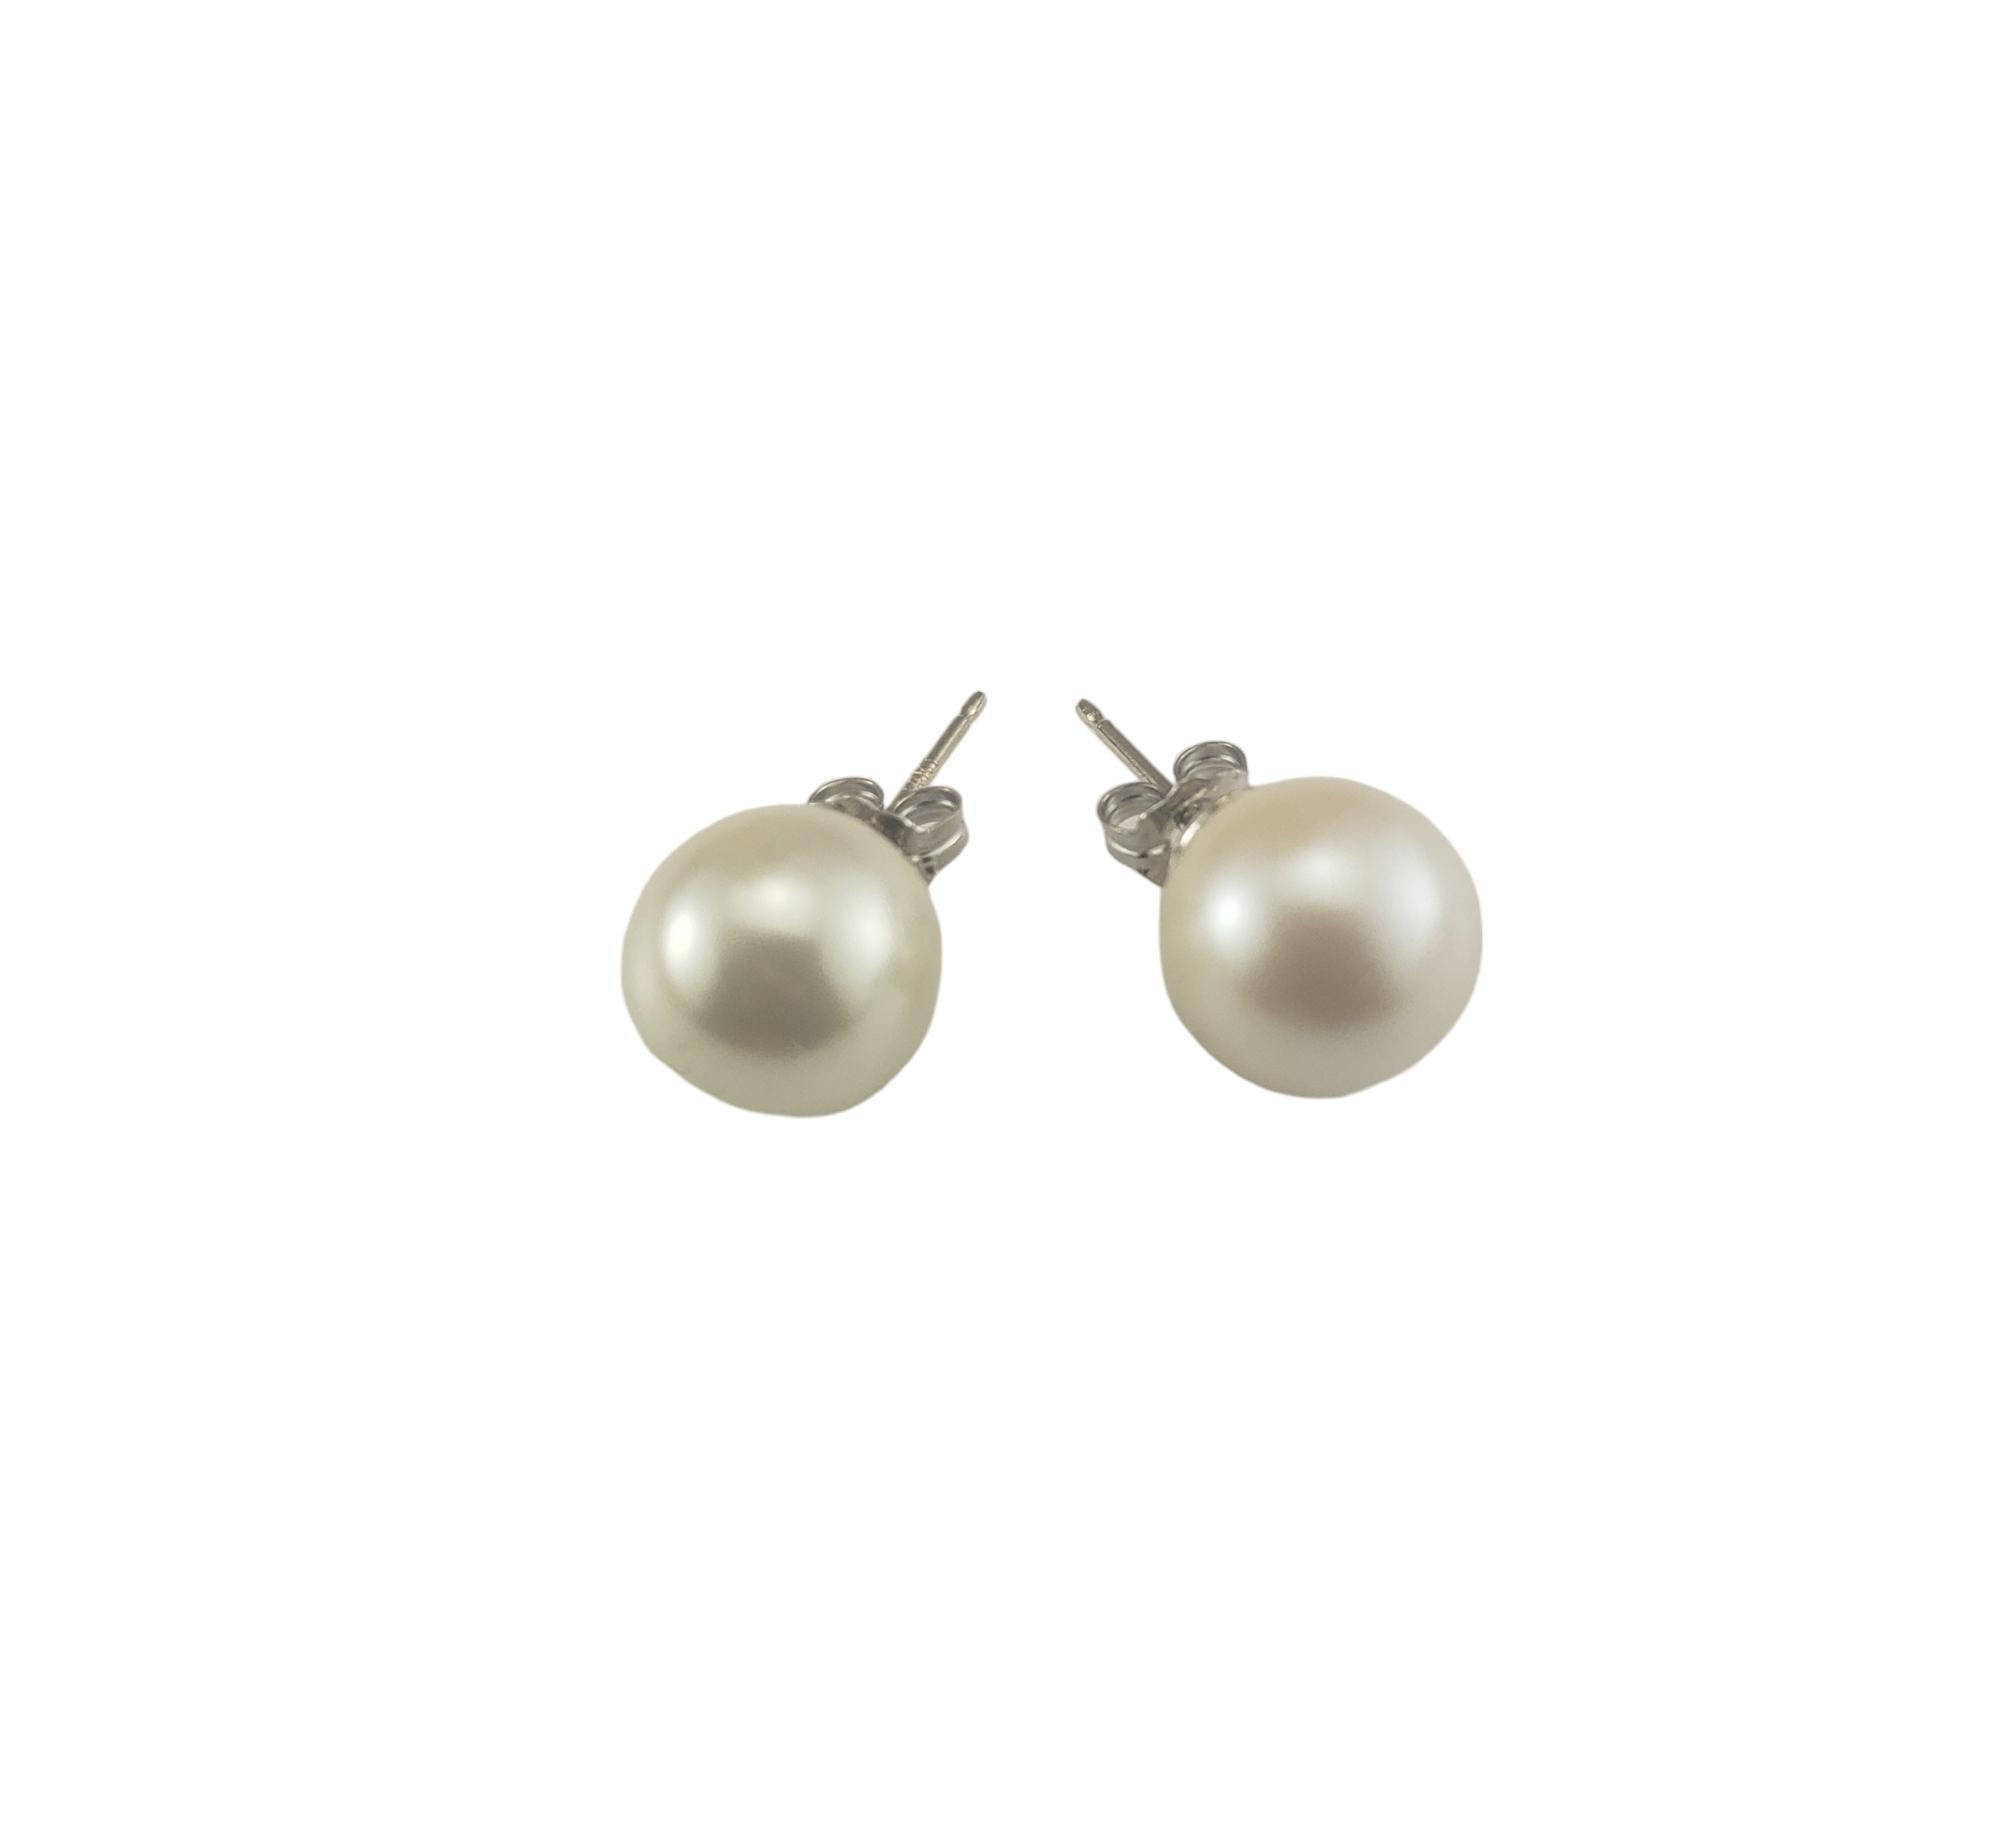 Boucles d'oreilles en or blanc 14 carats avec perles-

Ces élégantes boucles d'oreilles présentent chacune une perle blanche (10 mm) sertie dans de l'or blanc classique 14K.  Fermetures à l'arrière.

Taille : 10 mm

Estampillé : 14KT

Poids : 1,5